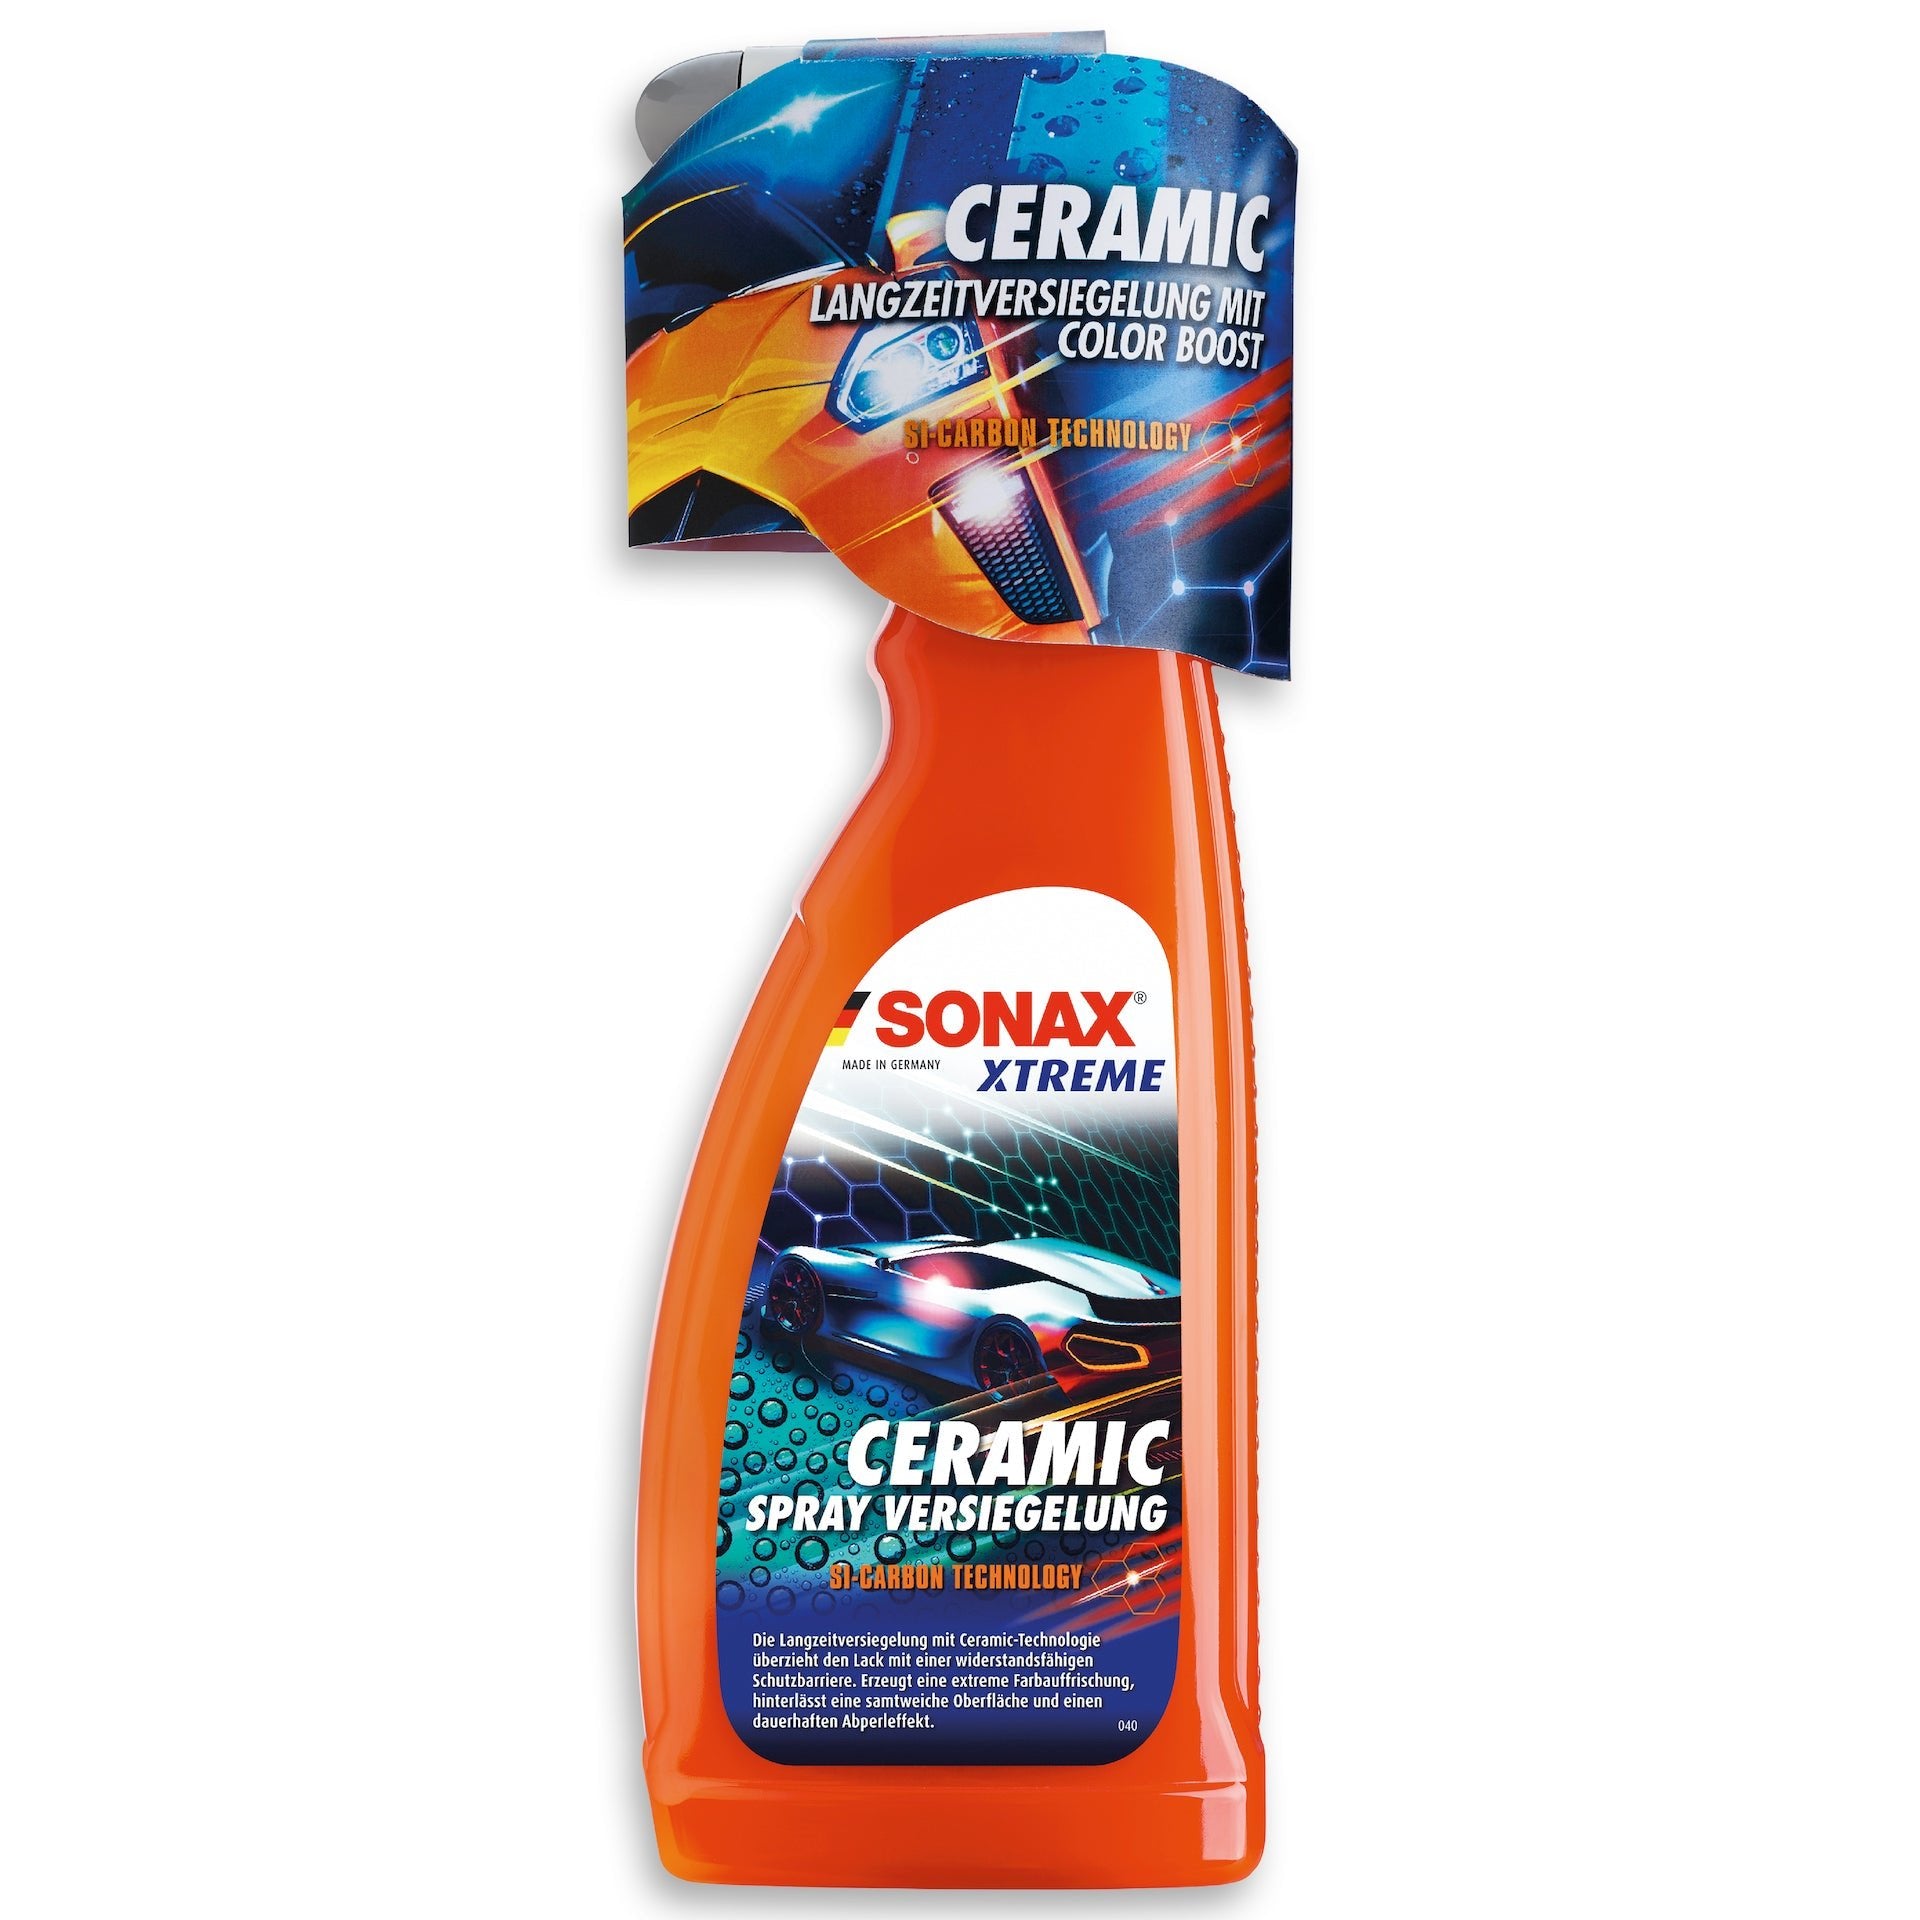 Sonax Xtreme Ceramic Spray Versiegelung - Shop4Tesla